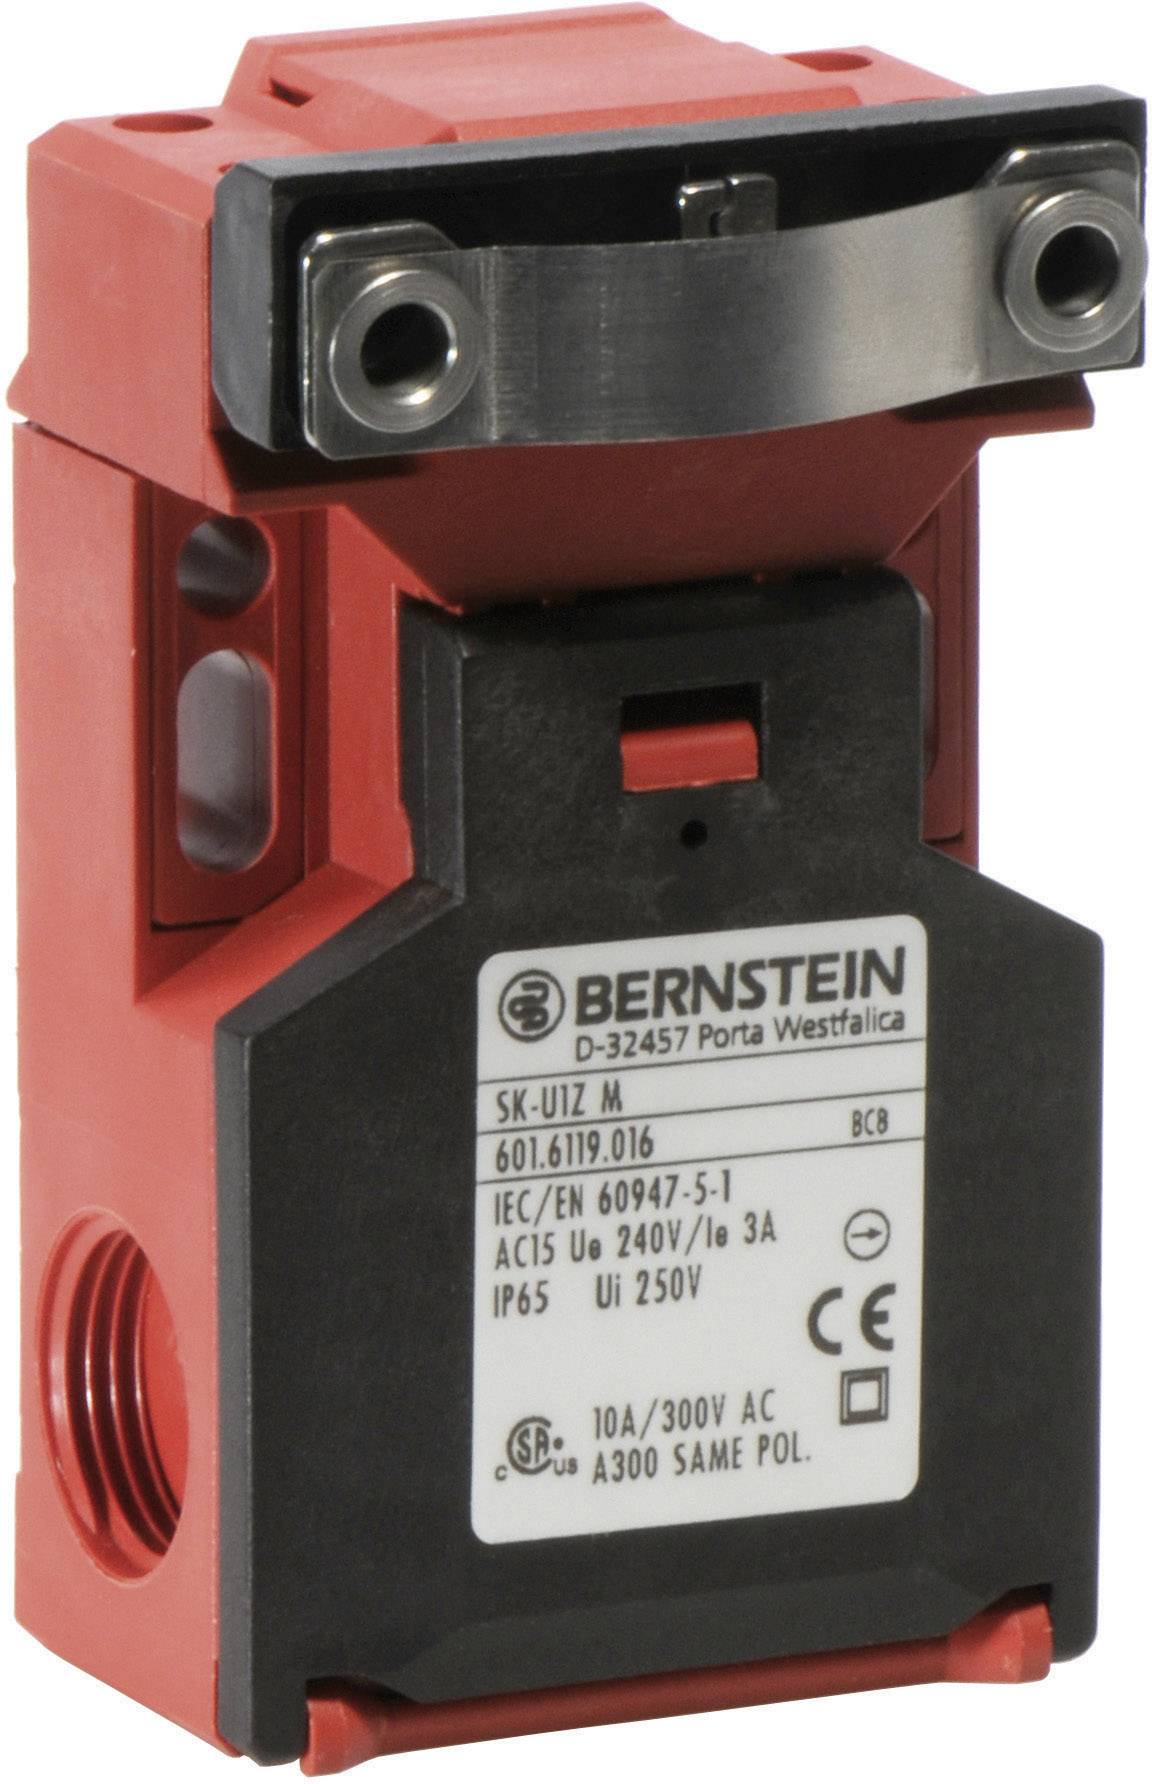 BERNSTEIN AG Sicherheitsschalter 240 V/AC 10 A getrennter Betätiger tastend SK-U1Z M IP65 1 St. (601